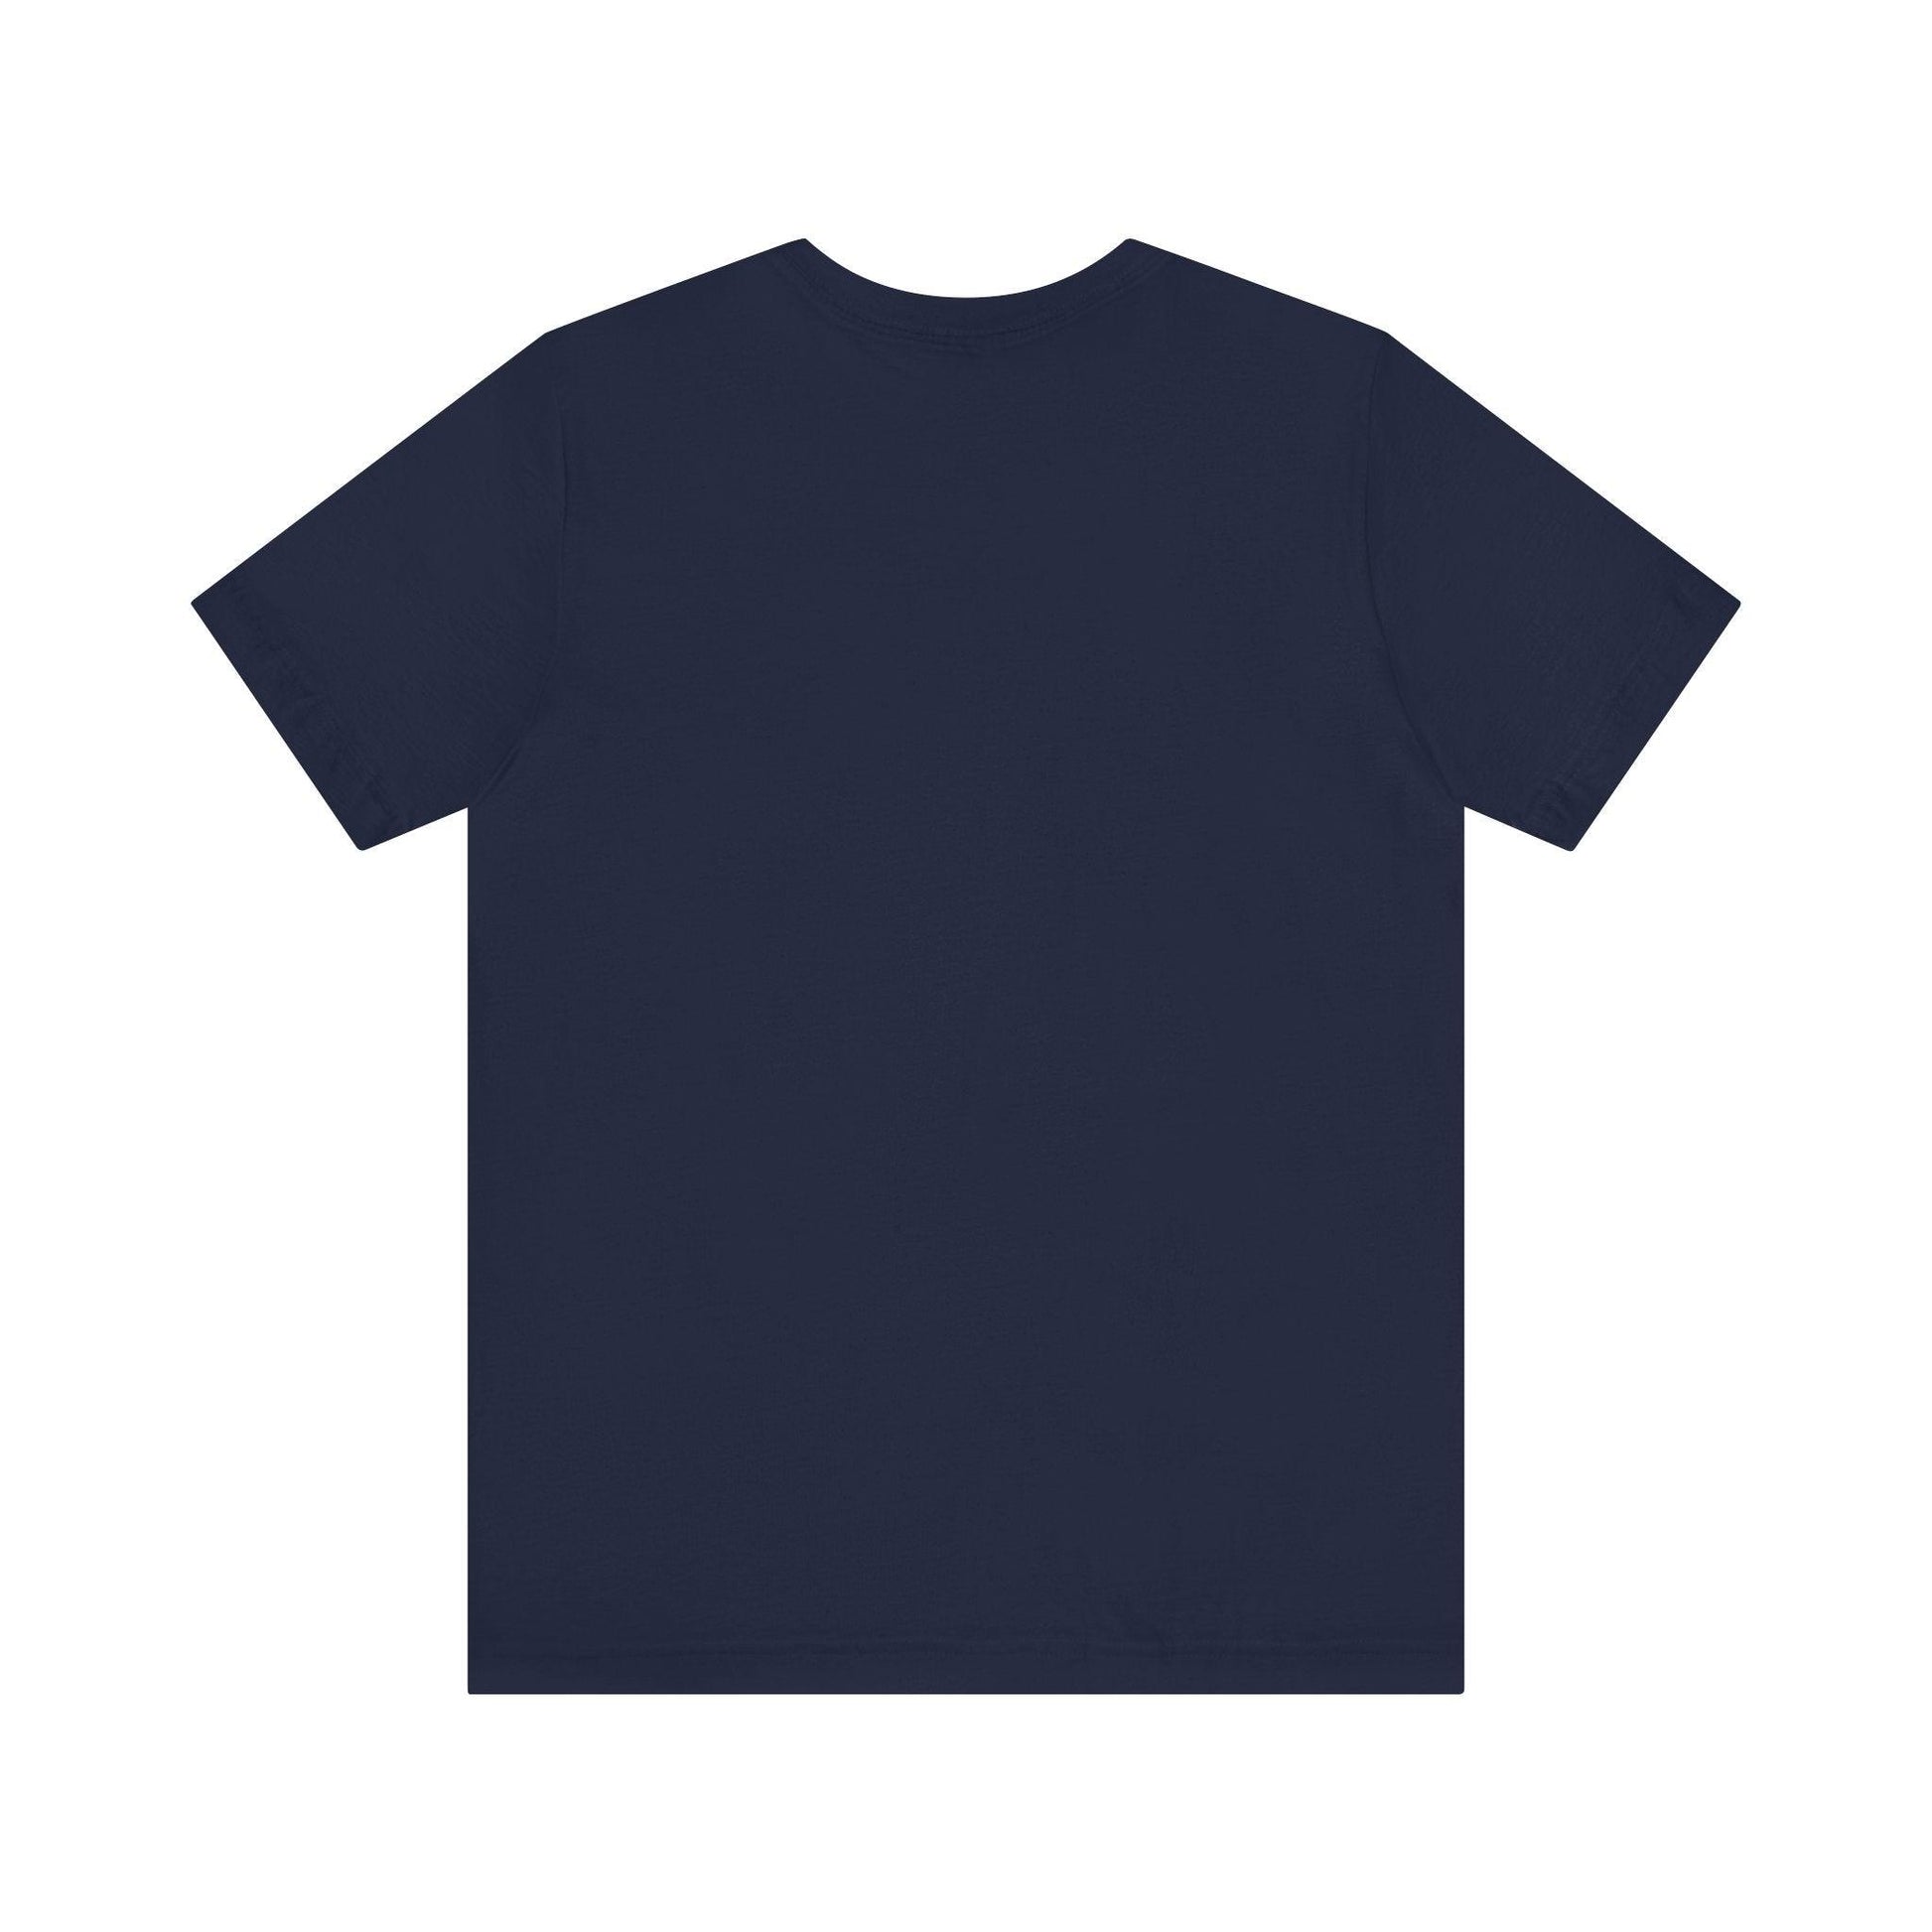 Unisex Jersey Short Sleeve Tee cute t shirt funny t shirt - MAK SHOP 